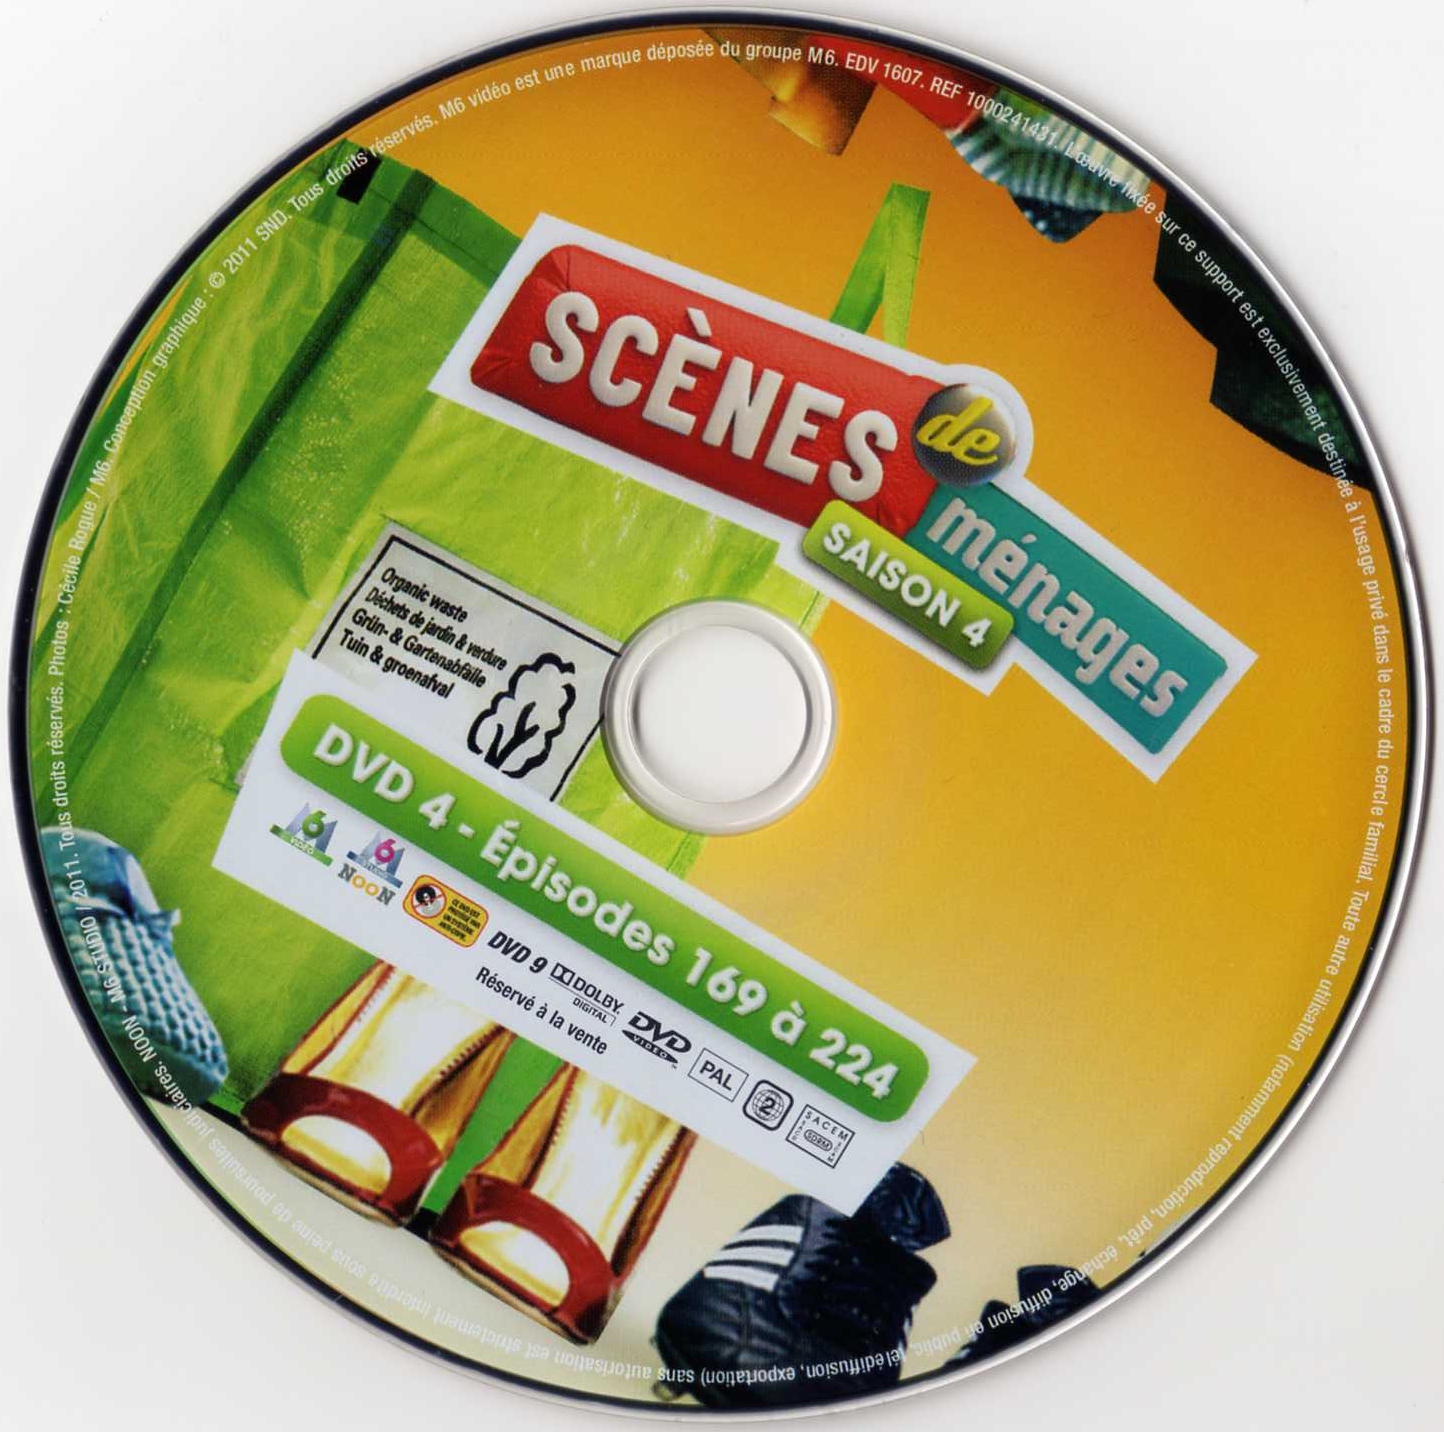 Scenes de mnages Saison 4 DVD 4